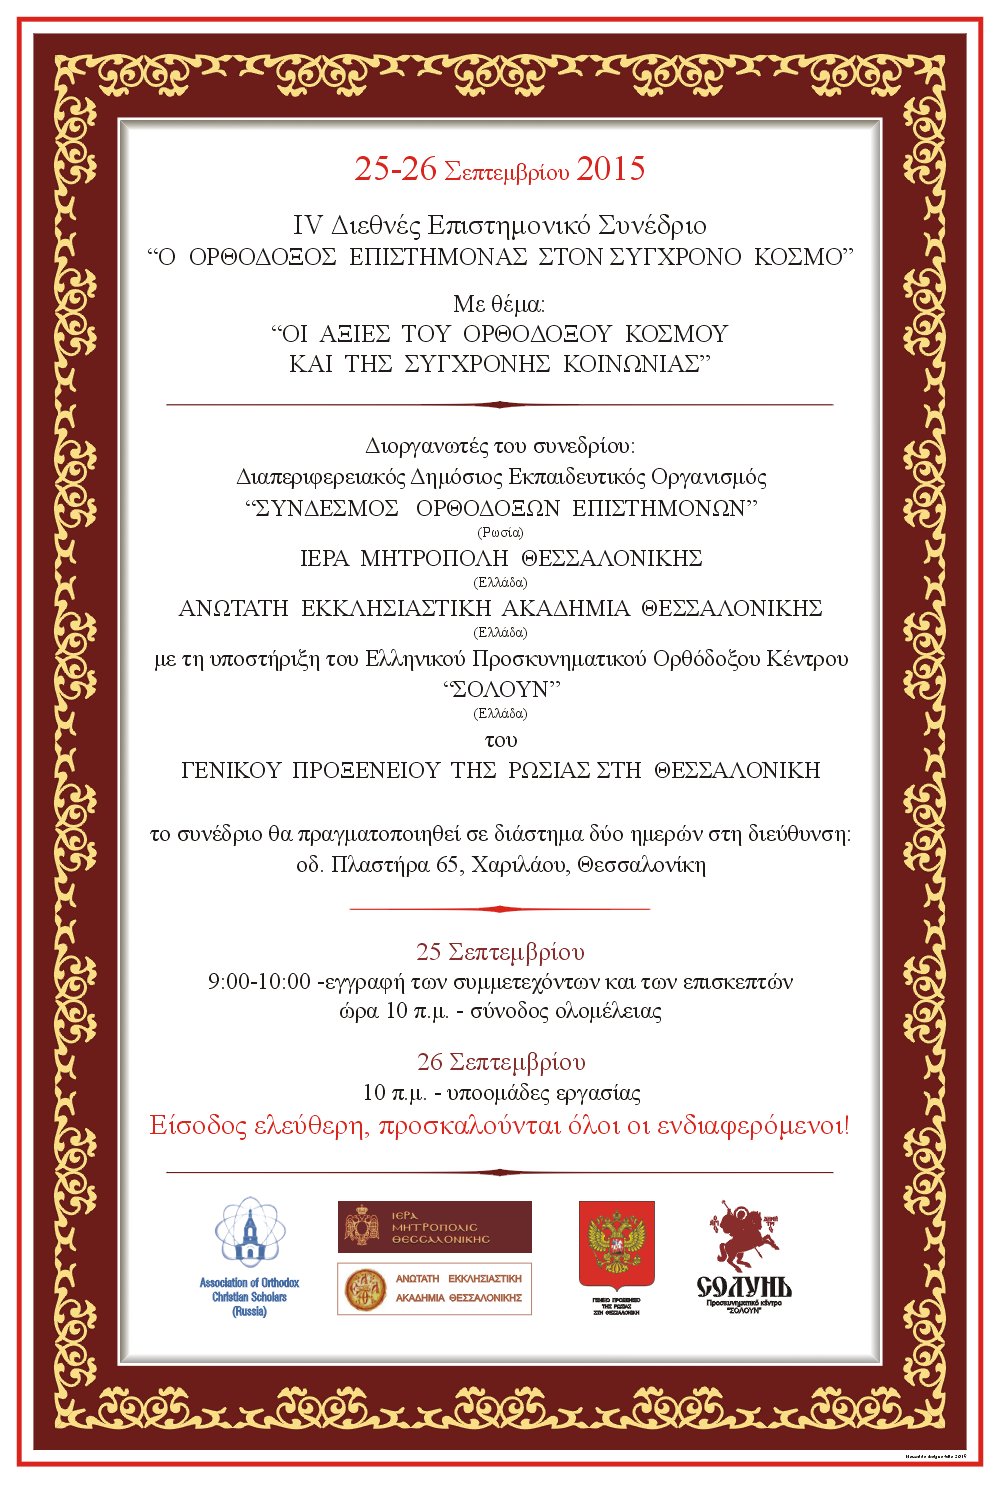 IV конференция «Православный ученый в современном мире» пройдет в Салониках